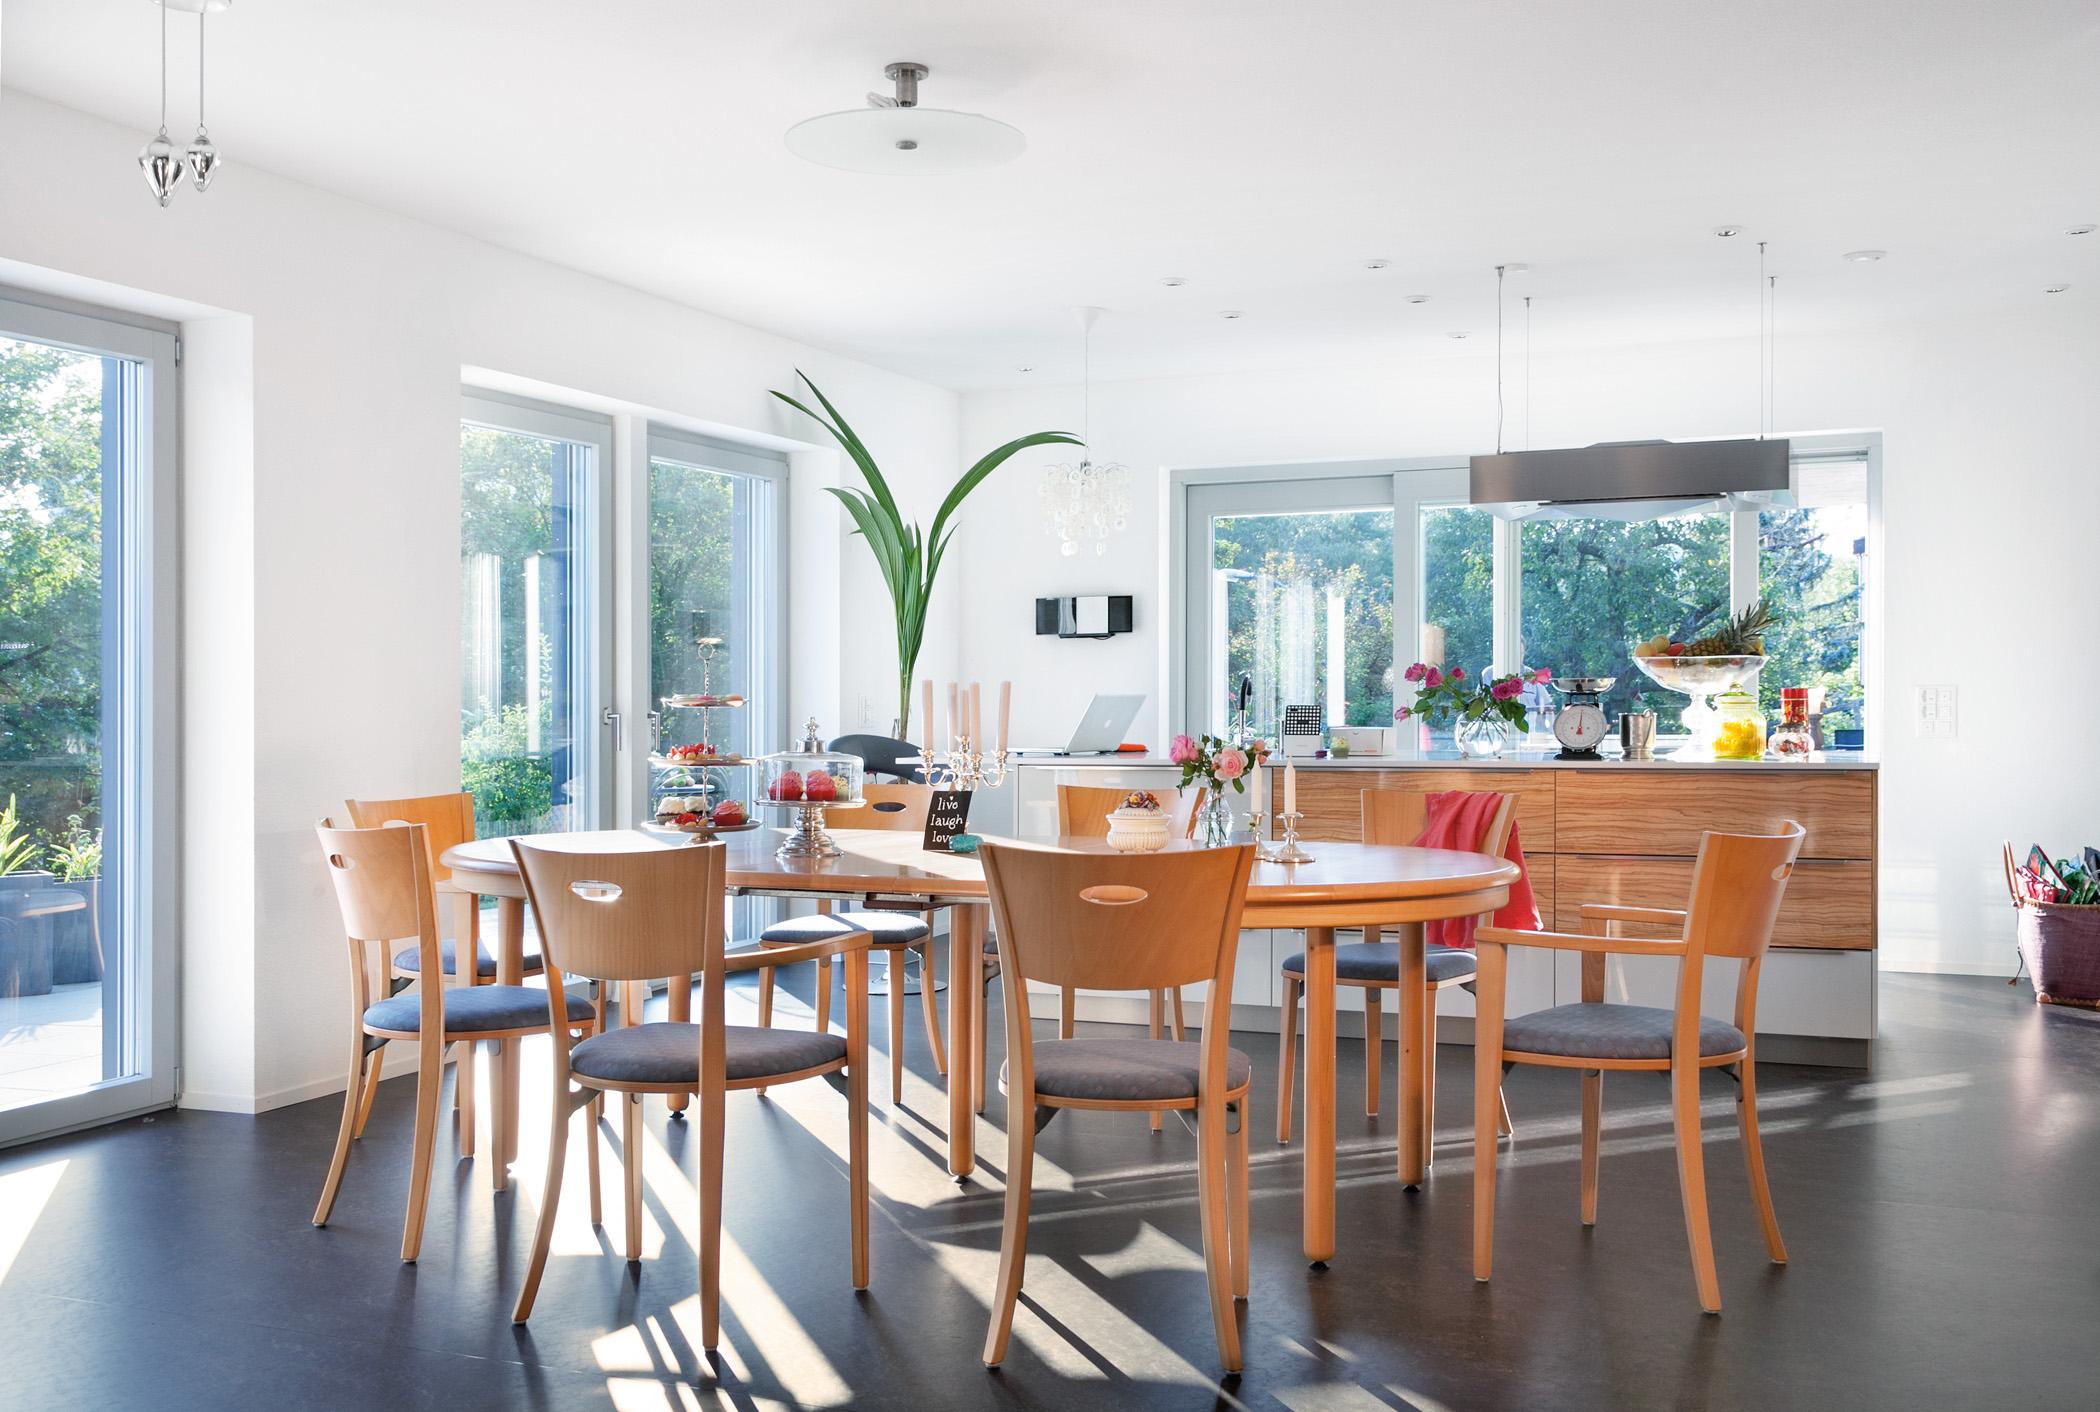 Großer Holztisch im Esszimmer #küche #esstisch #sideboard #lampe #bodentiefefenster ©SchwörerHaus/J.Lippert